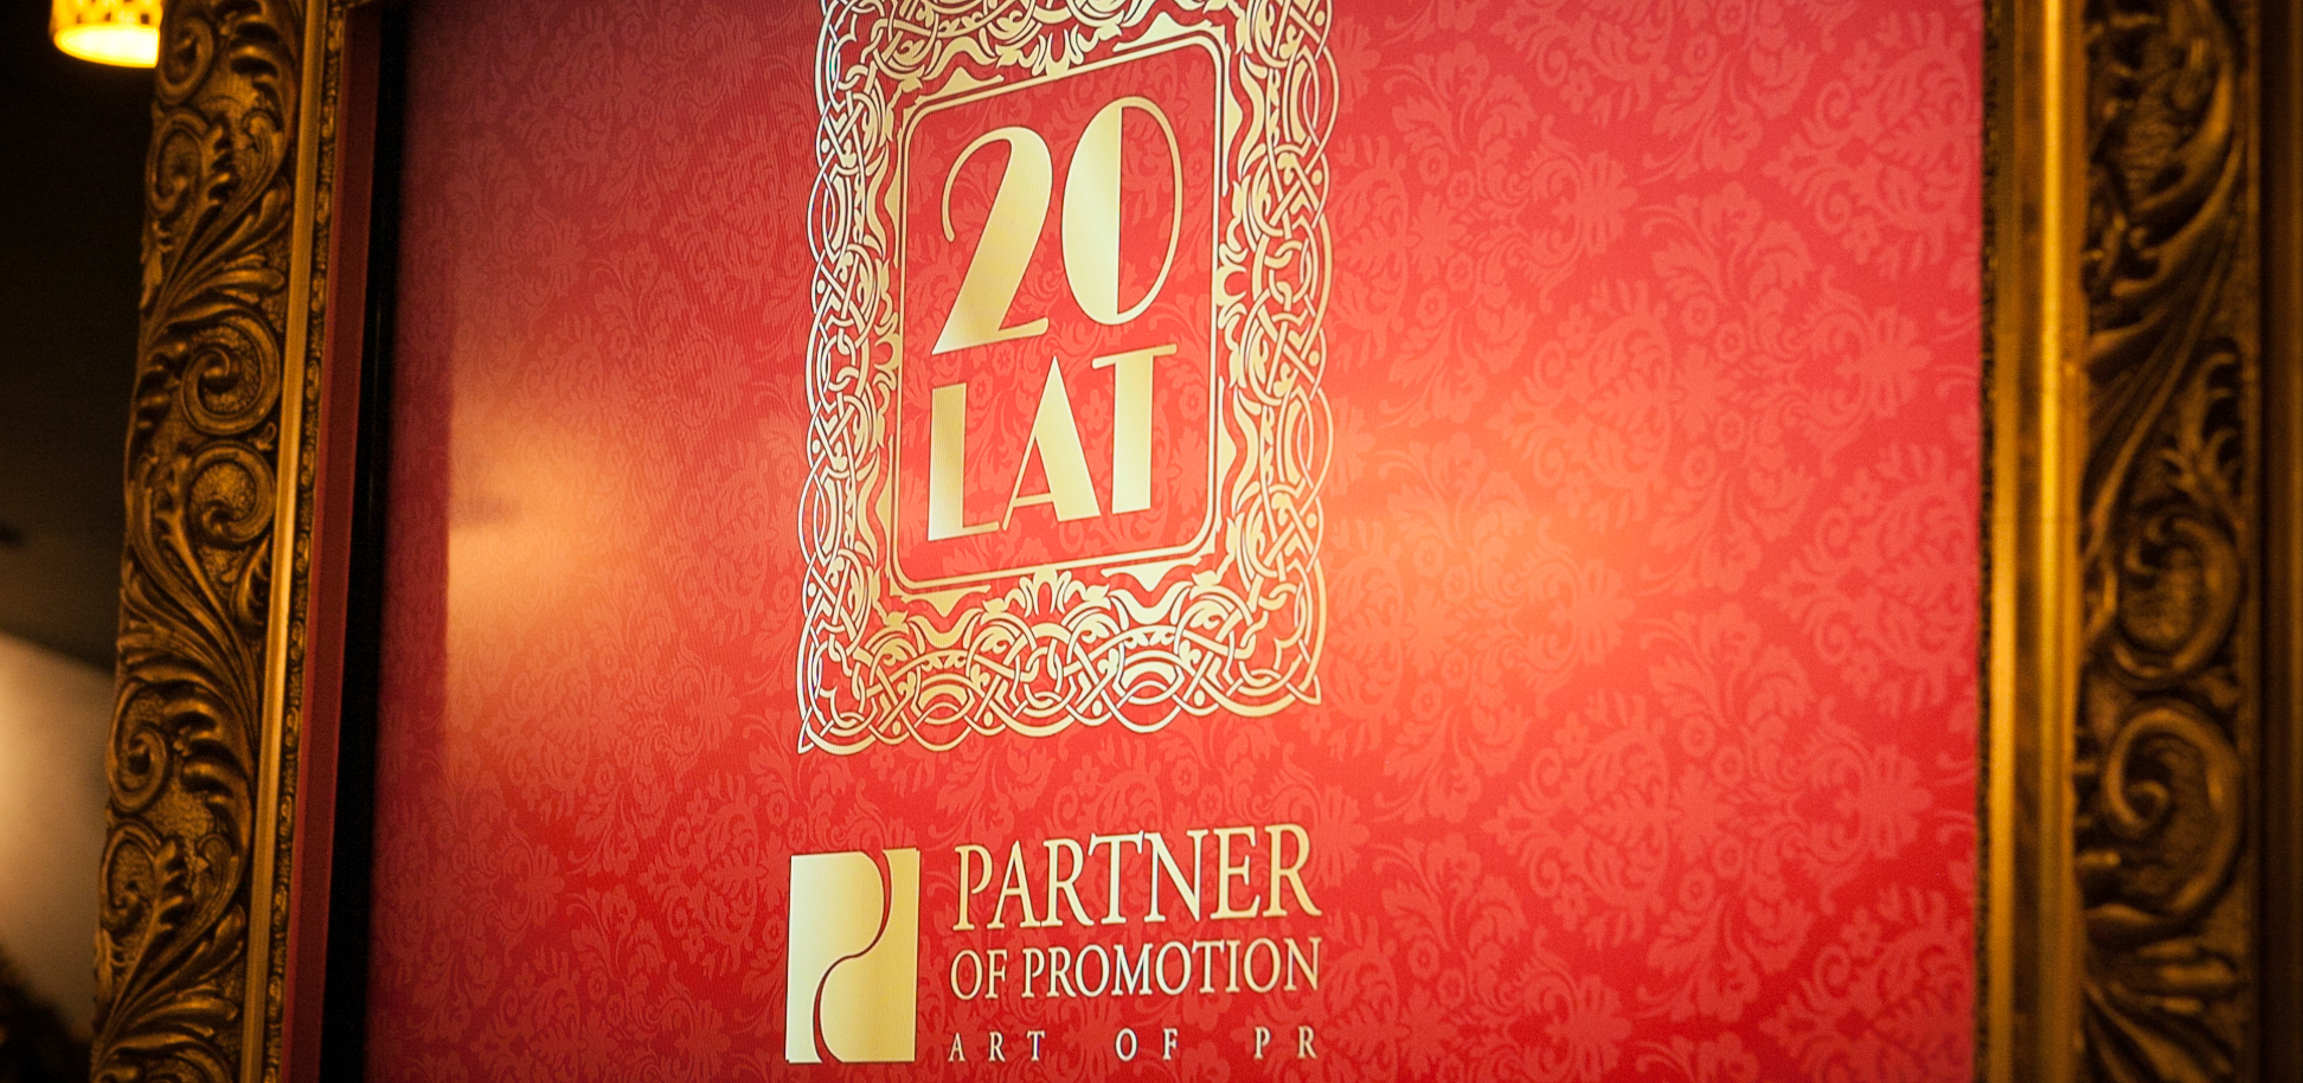 Partner of Promotion świętuje 20-lecie obecności na rynku Wydarzenia 20lecie Partnet of Promotion 5118